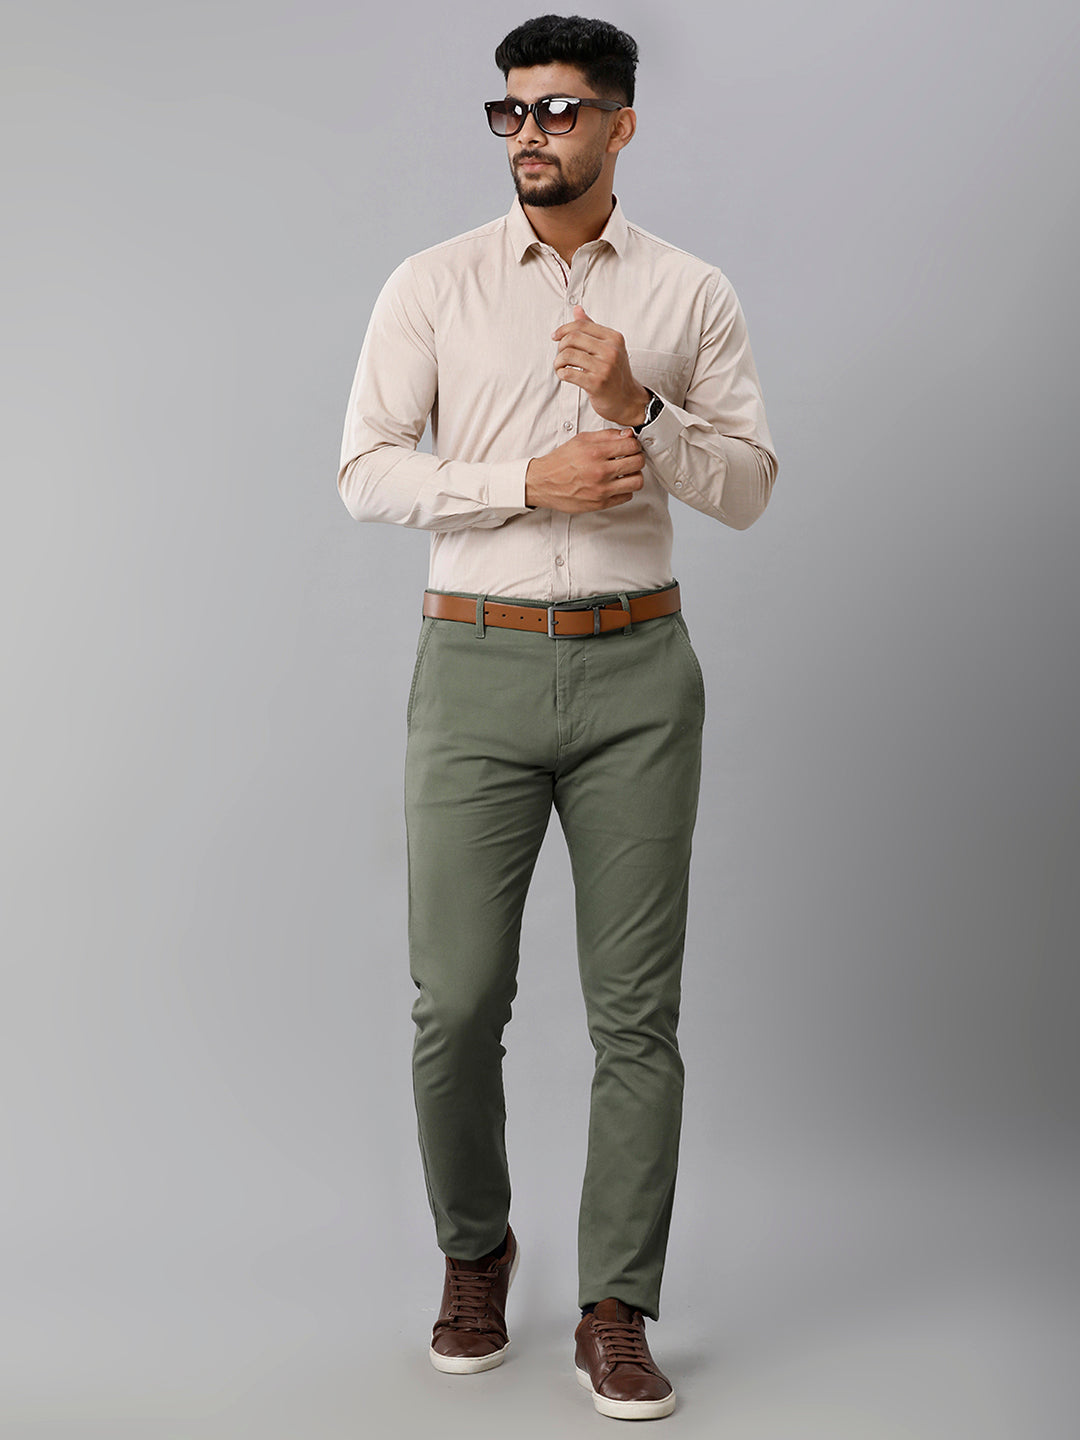 Mens Premium Cotton Formal Shirt Full Sleeves Light Brown MH G113-Full view